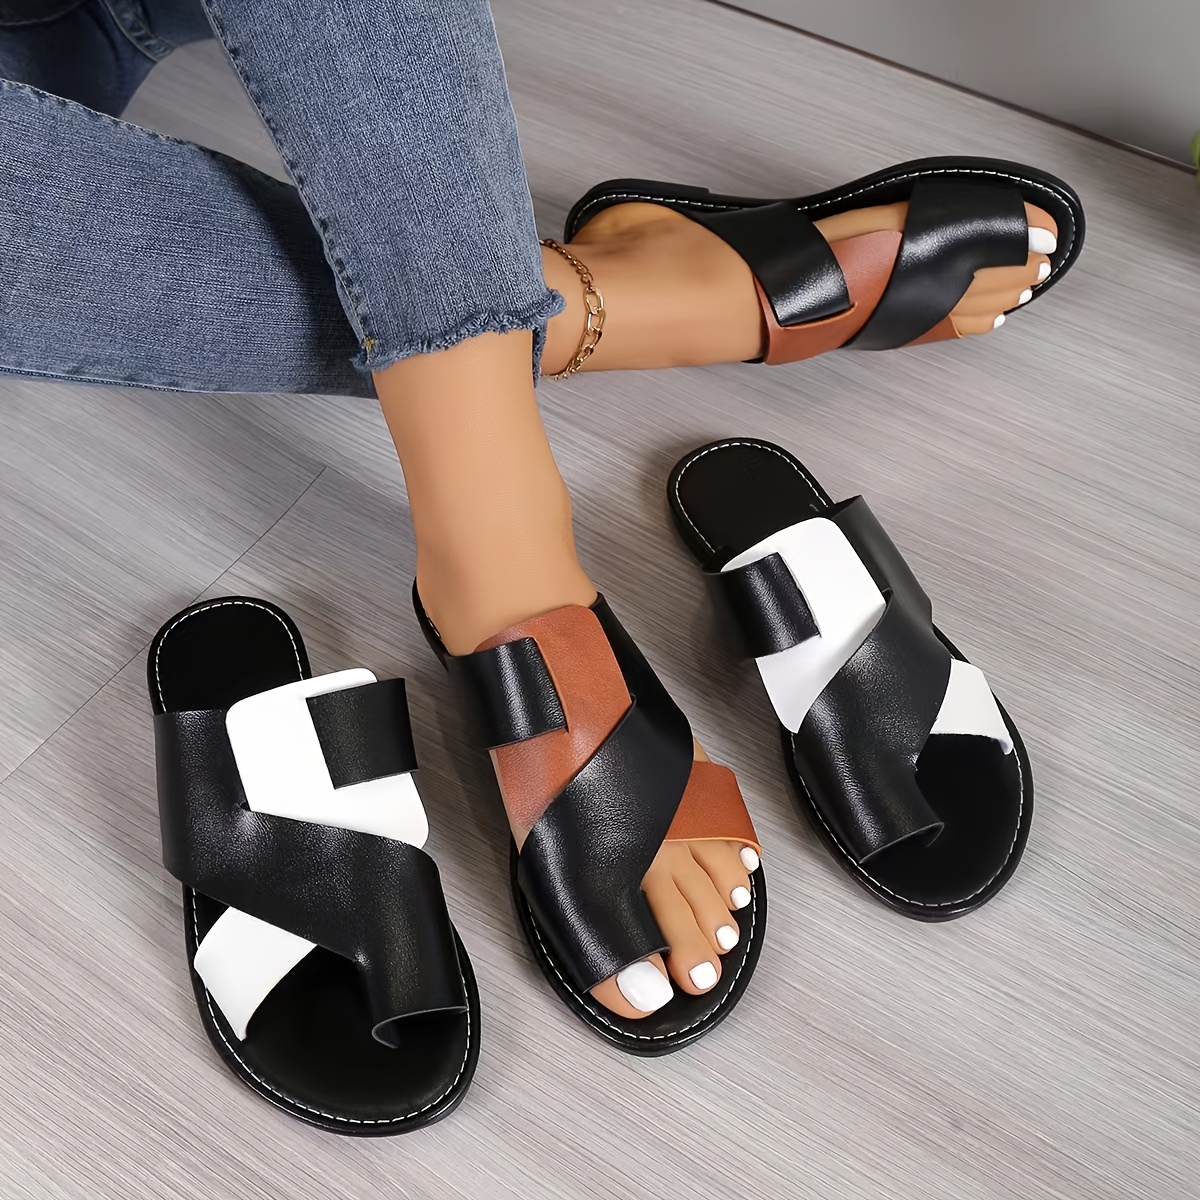 

Femmes Sandales À Glissière À Contraste De Couleur, Chaussures D'été Plates Décontractées À Boucle, Chaussures De Plage Légères